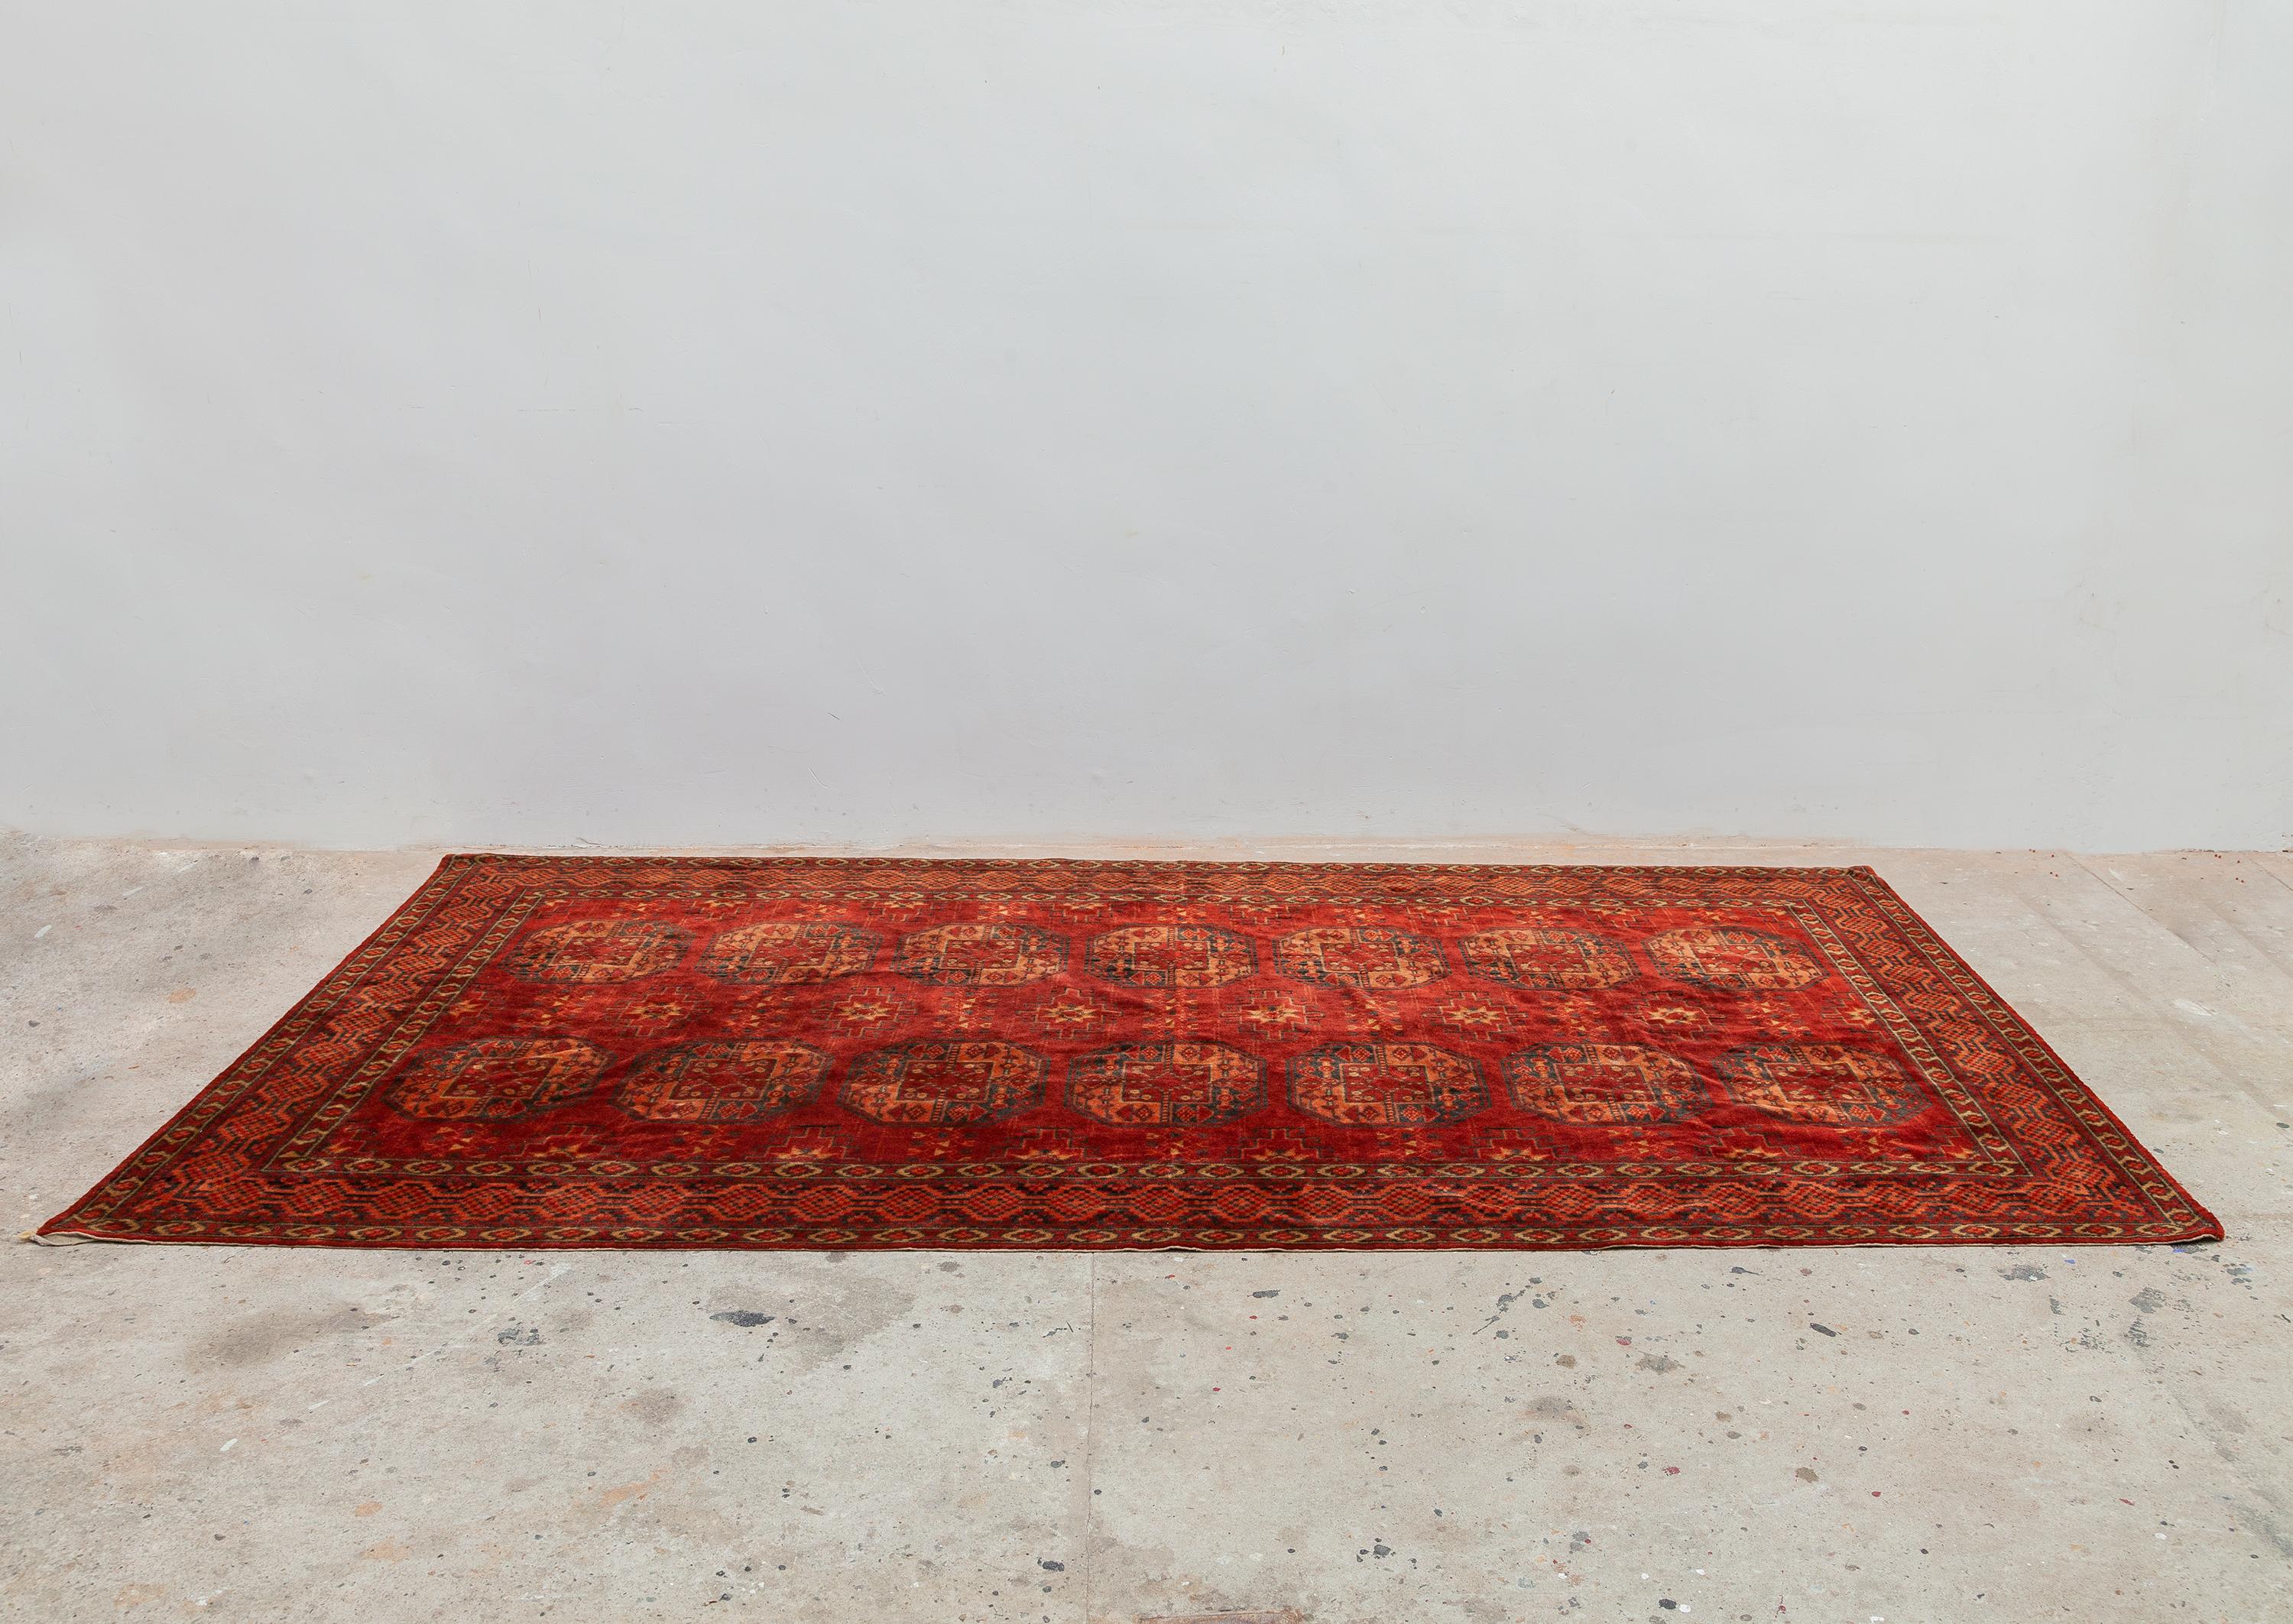 Tissu en velours Art déco ancien. Motif tissé de style persan. Surface veloutée rouge chaud, orange et noir. Dimensions : 257W x 135H cm.